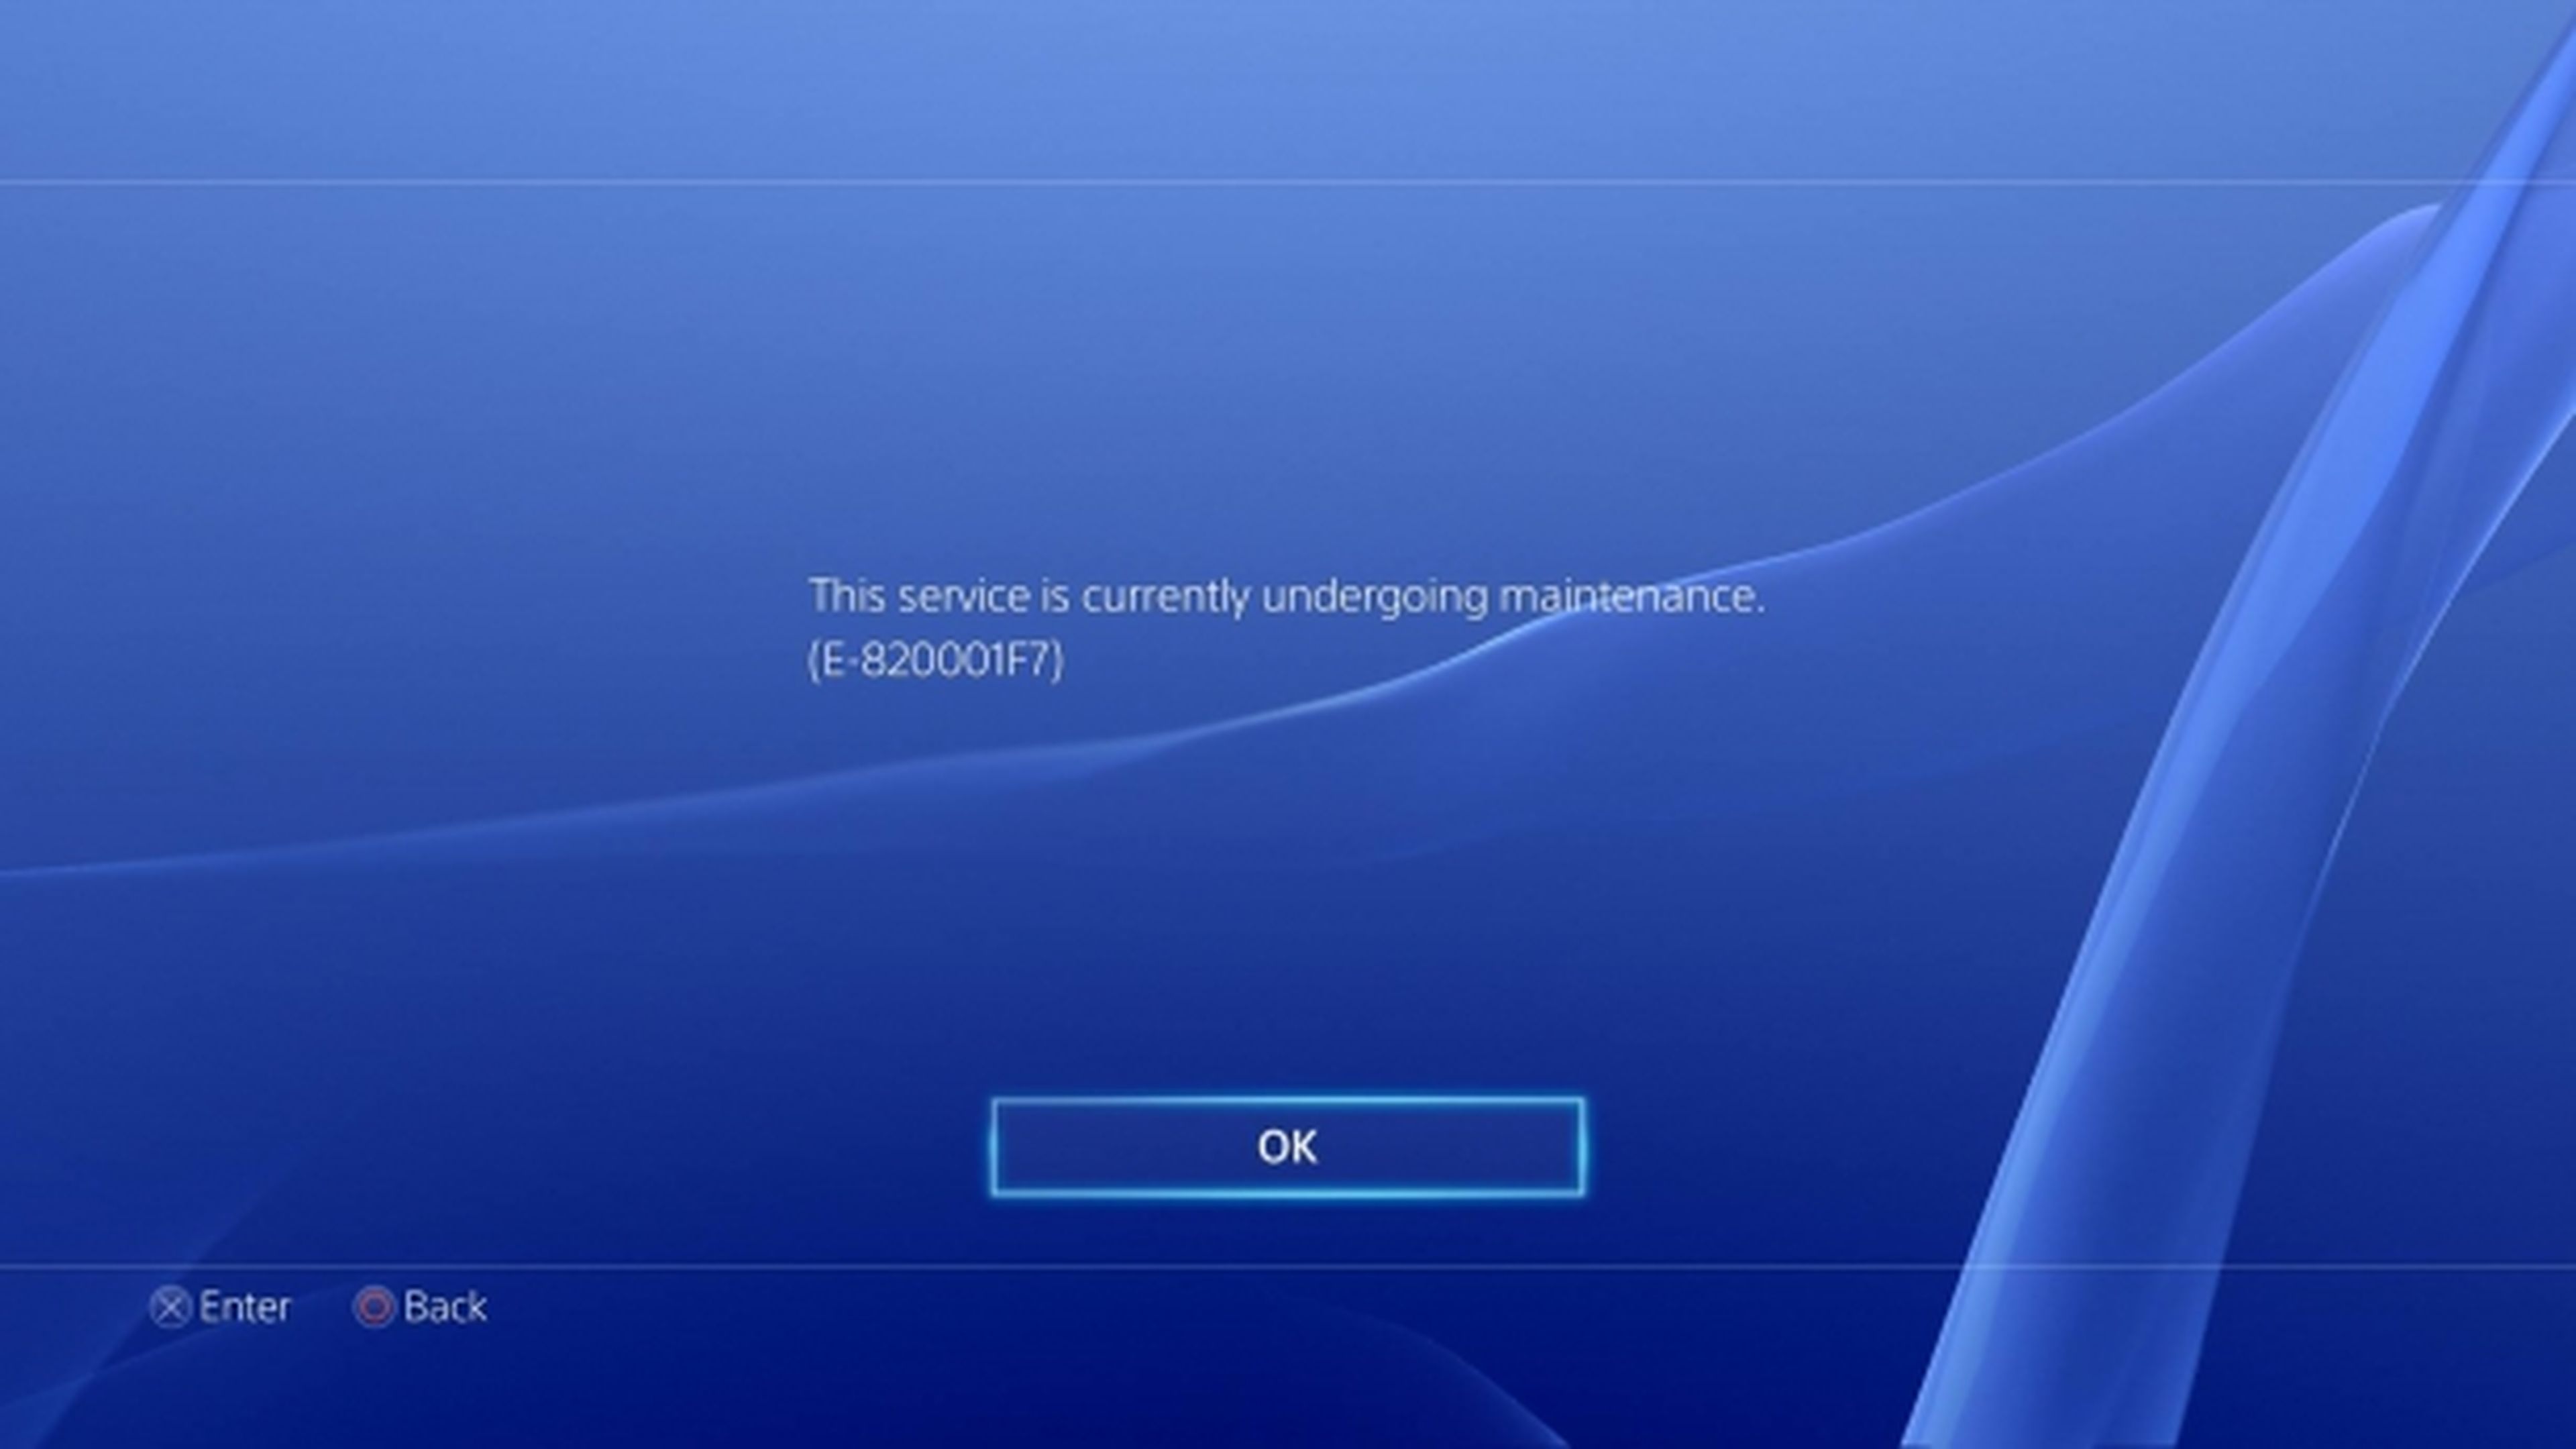 PS4 sigue experimentando problemas de acceso a PSN